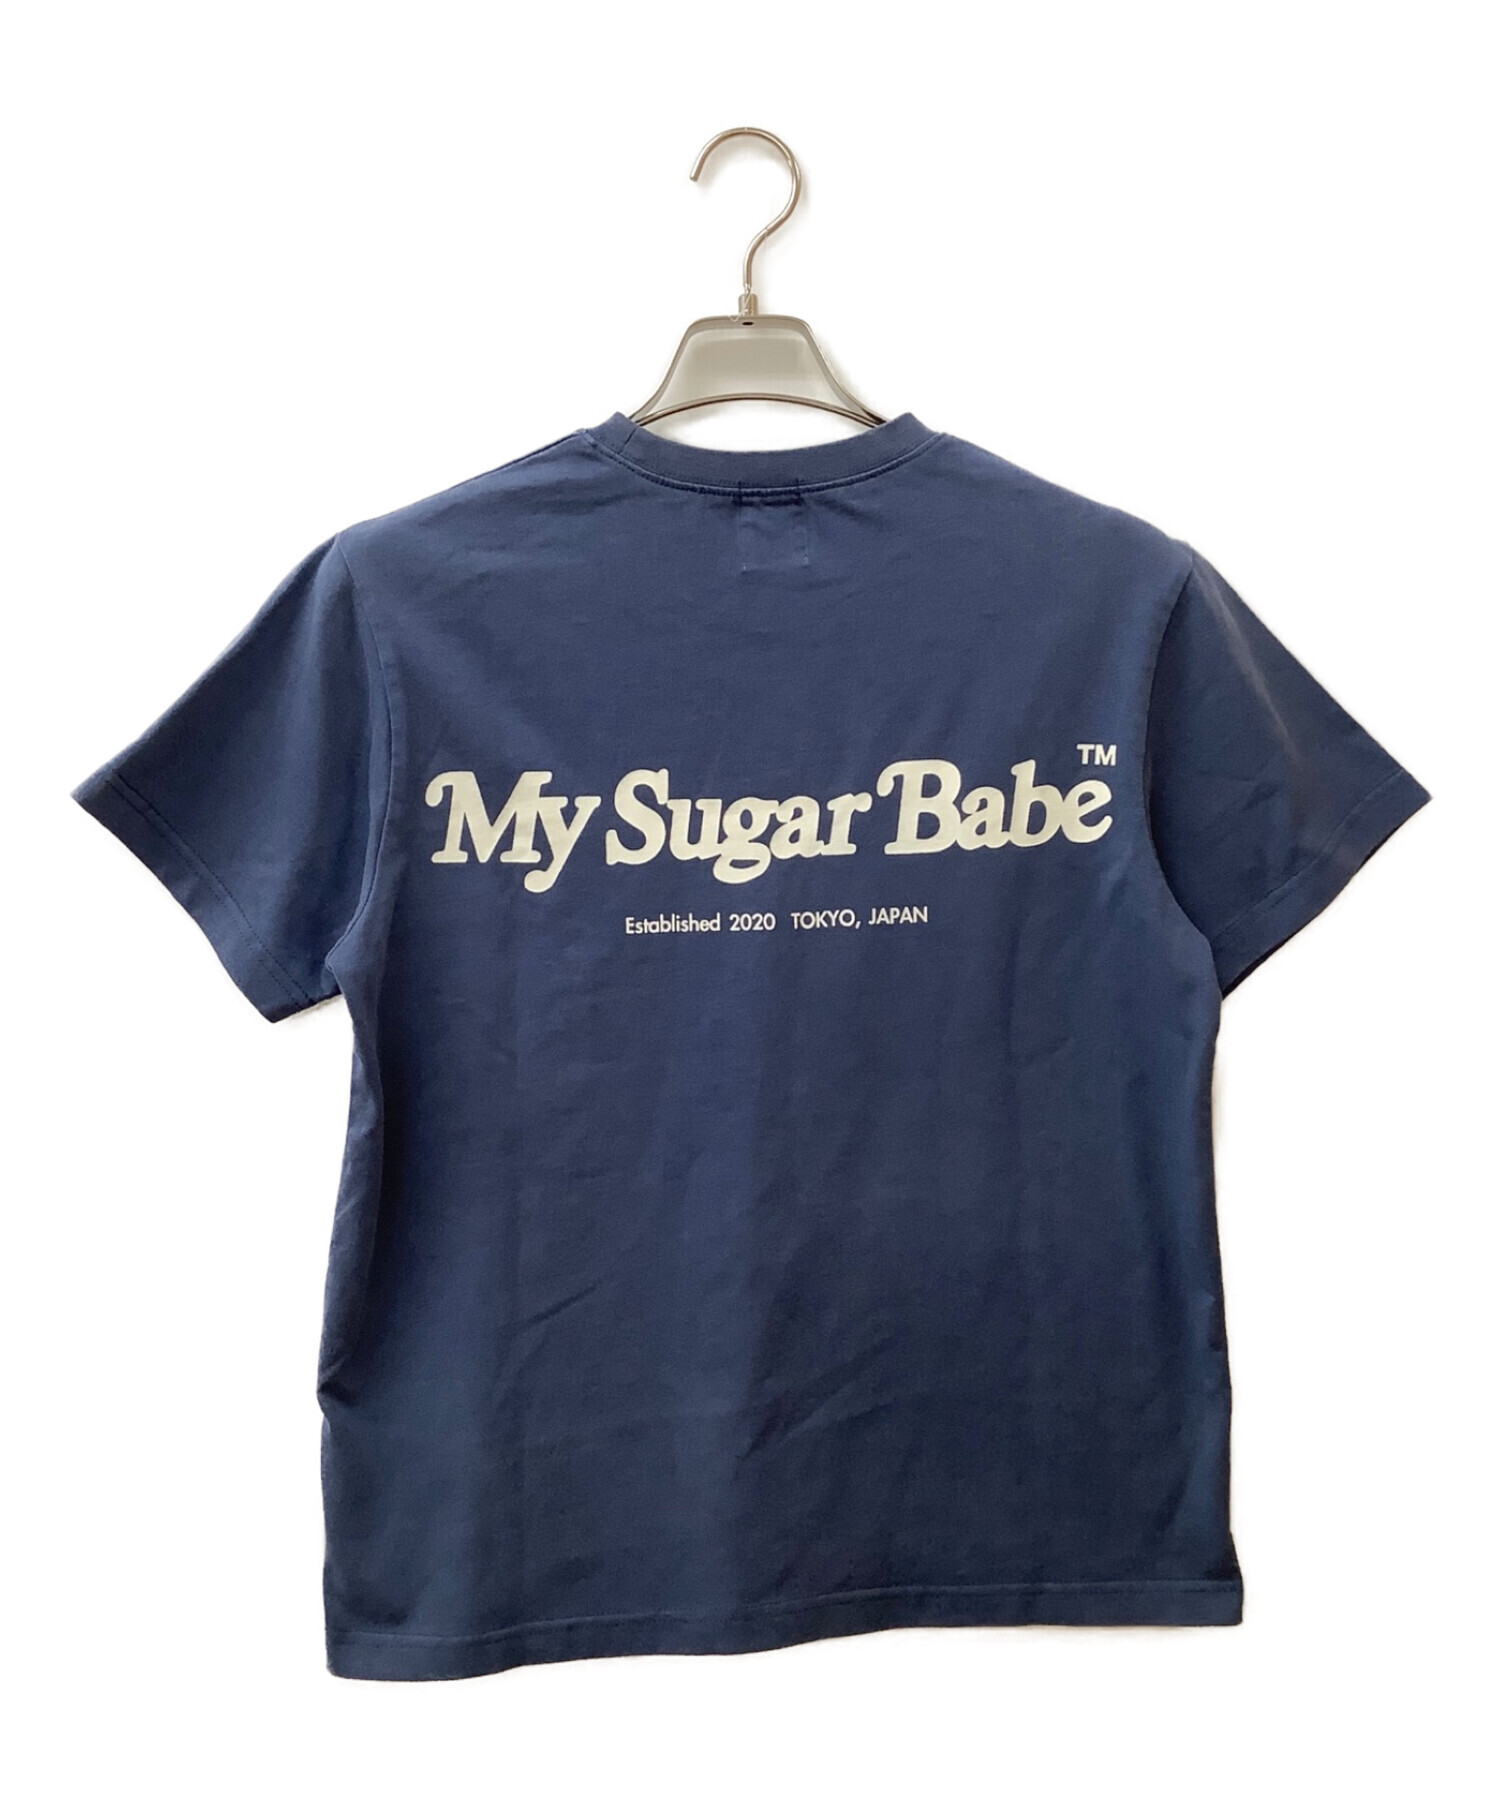 中古・古着通販】My Sugar Babe (マイシュガーベイブ) 刺繍ロゴTシャツ 